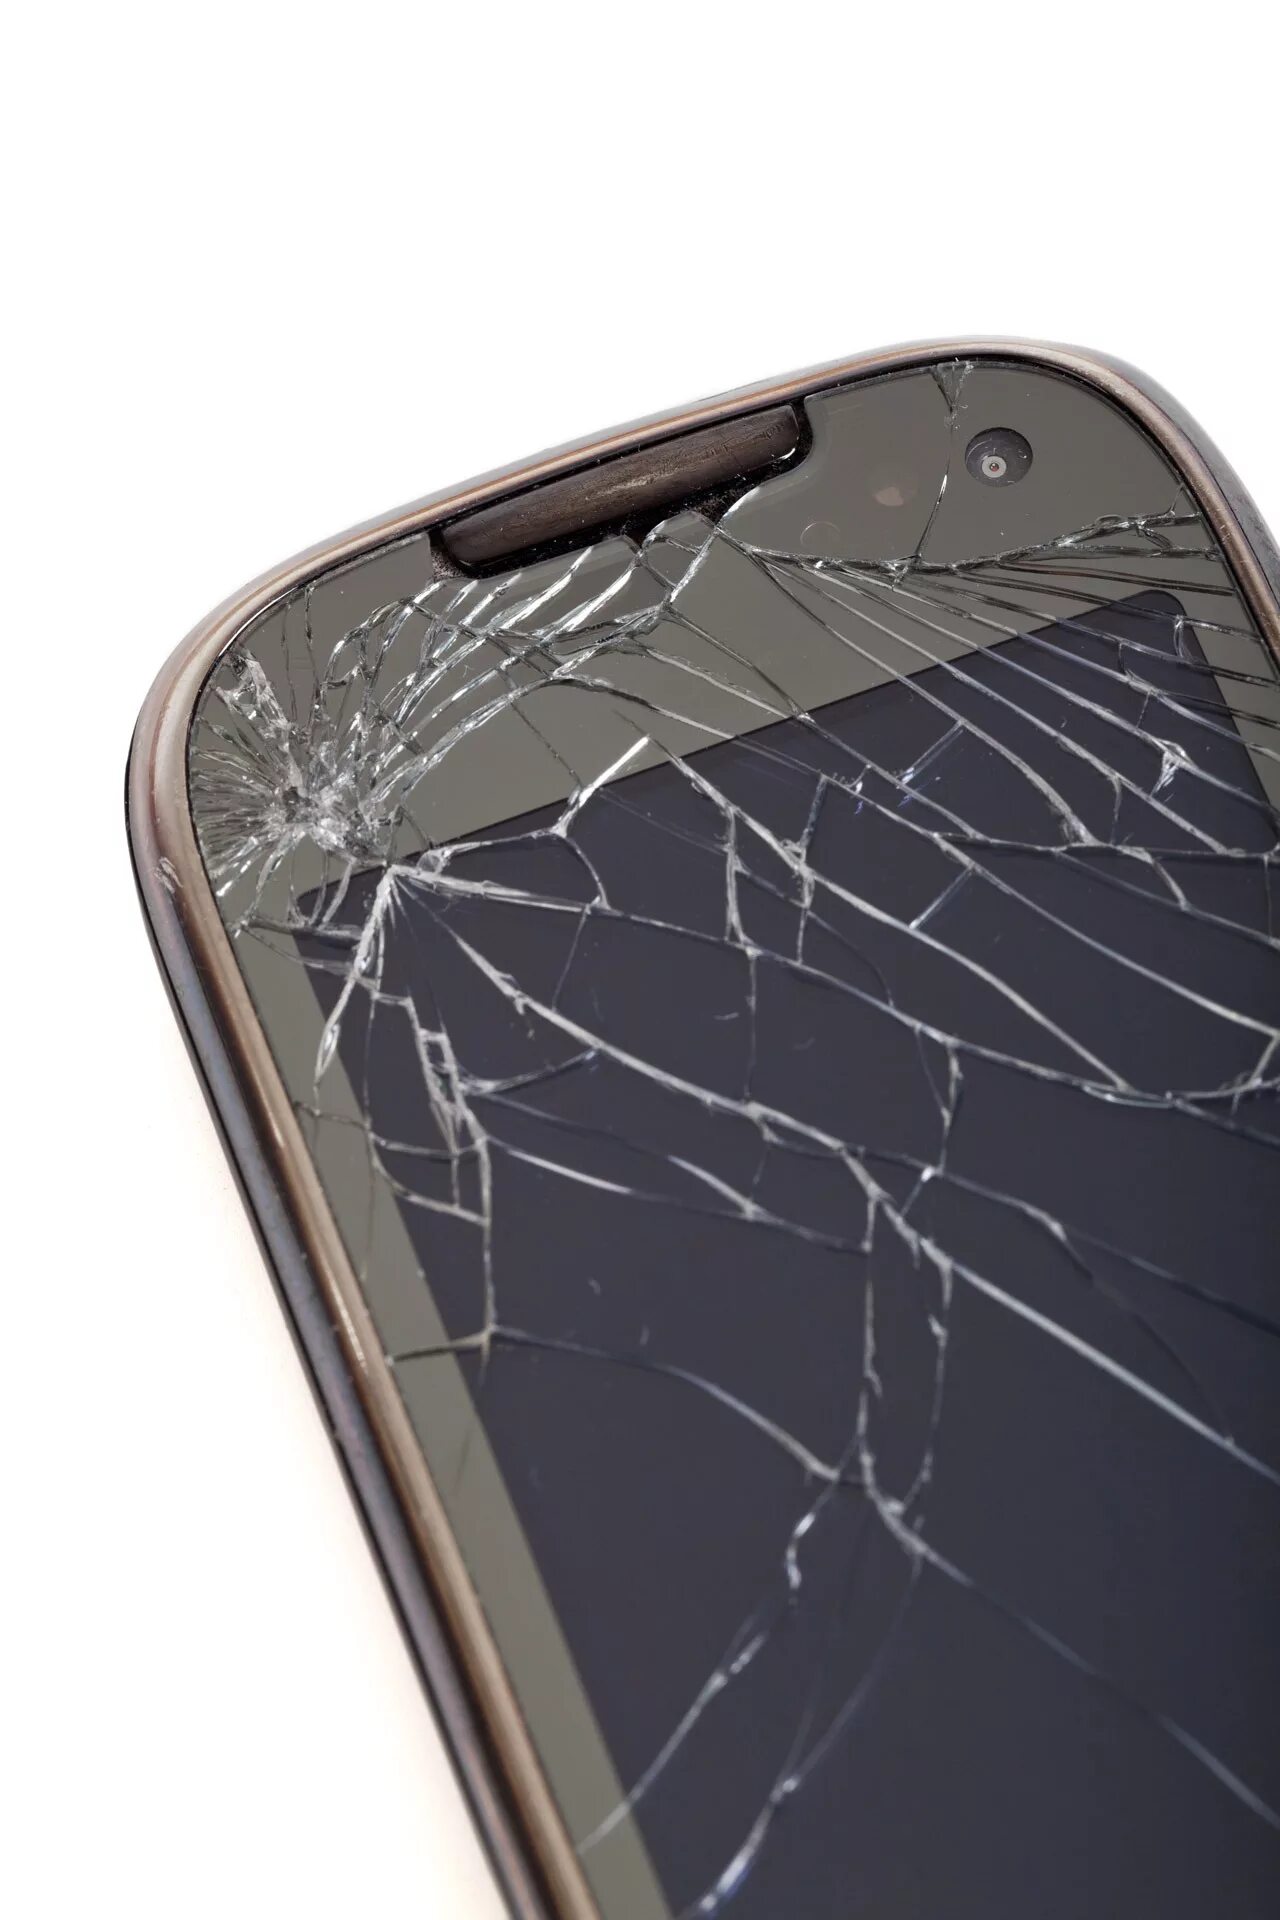 Ремонт разбитого телефона. Разбитый смартфон. Сломанный смартфон. Битый дисплей смартфона. Смартфон с разбитым стеклом.